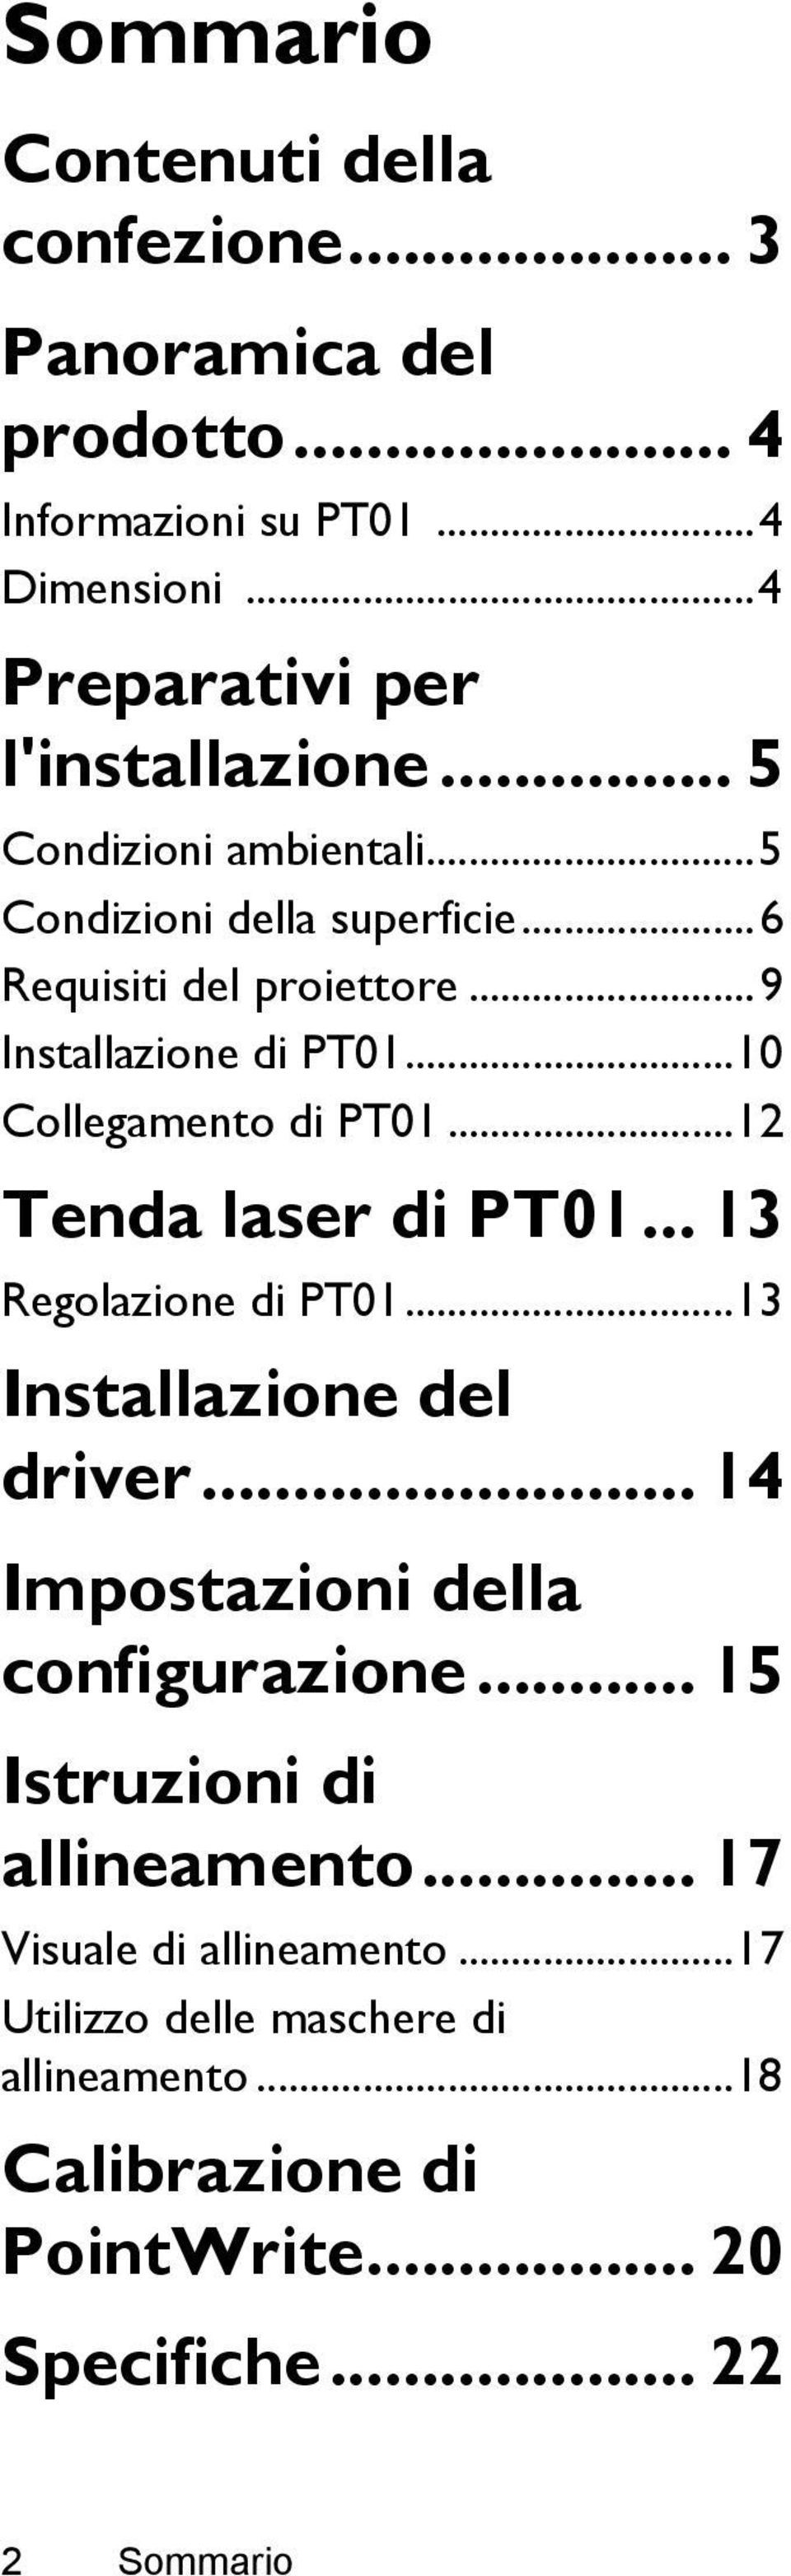 ..12 Tenda laser di PT01... 13 Regolazione di PT01...13 Installazione del driver... 14 Impostazioni della configurazione.